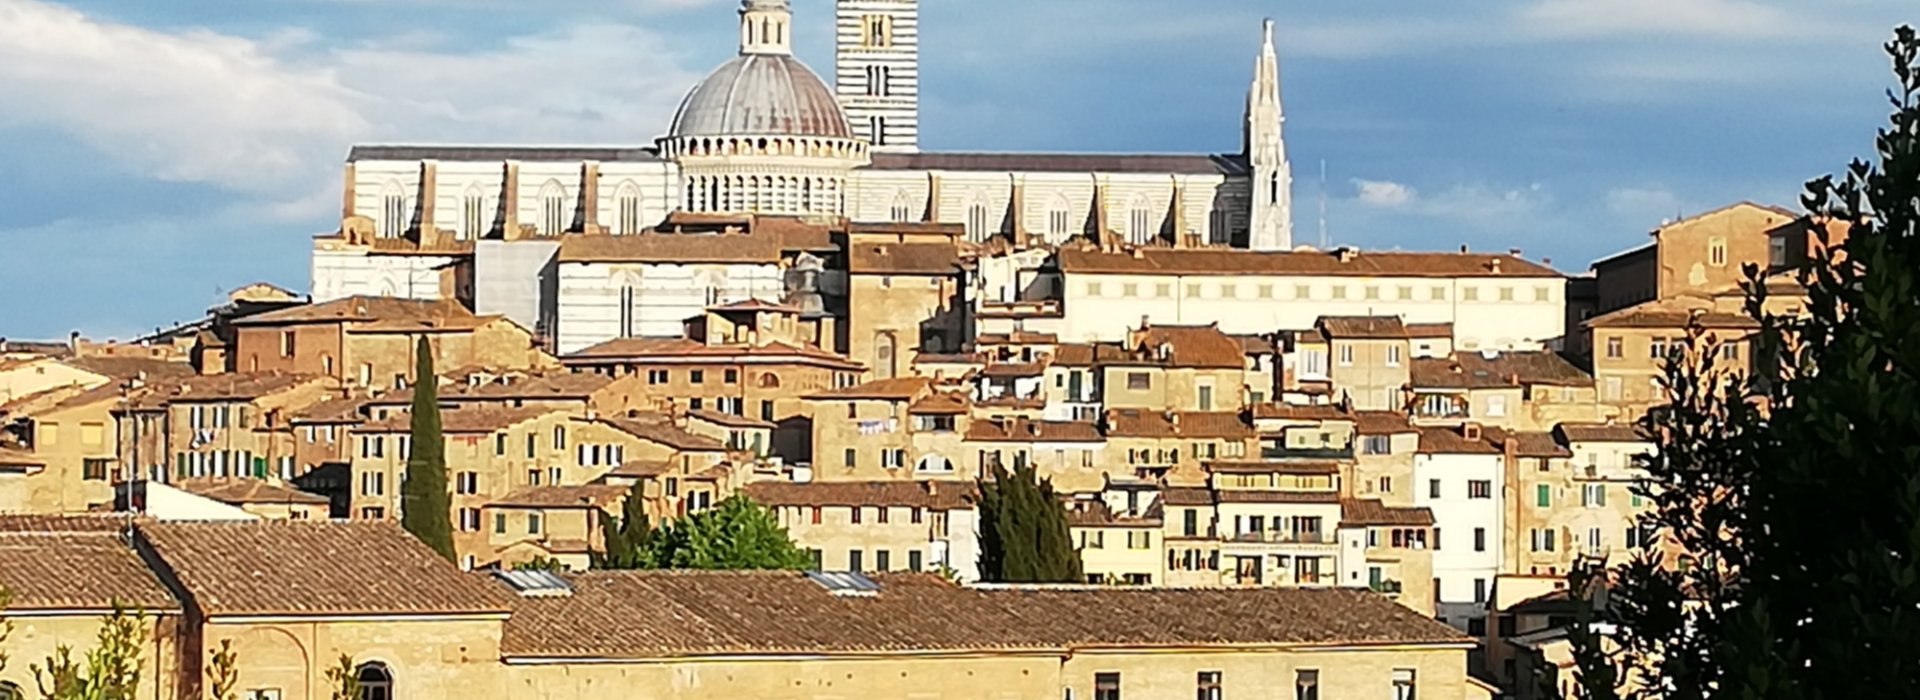 Siena e la sua Cattedrale